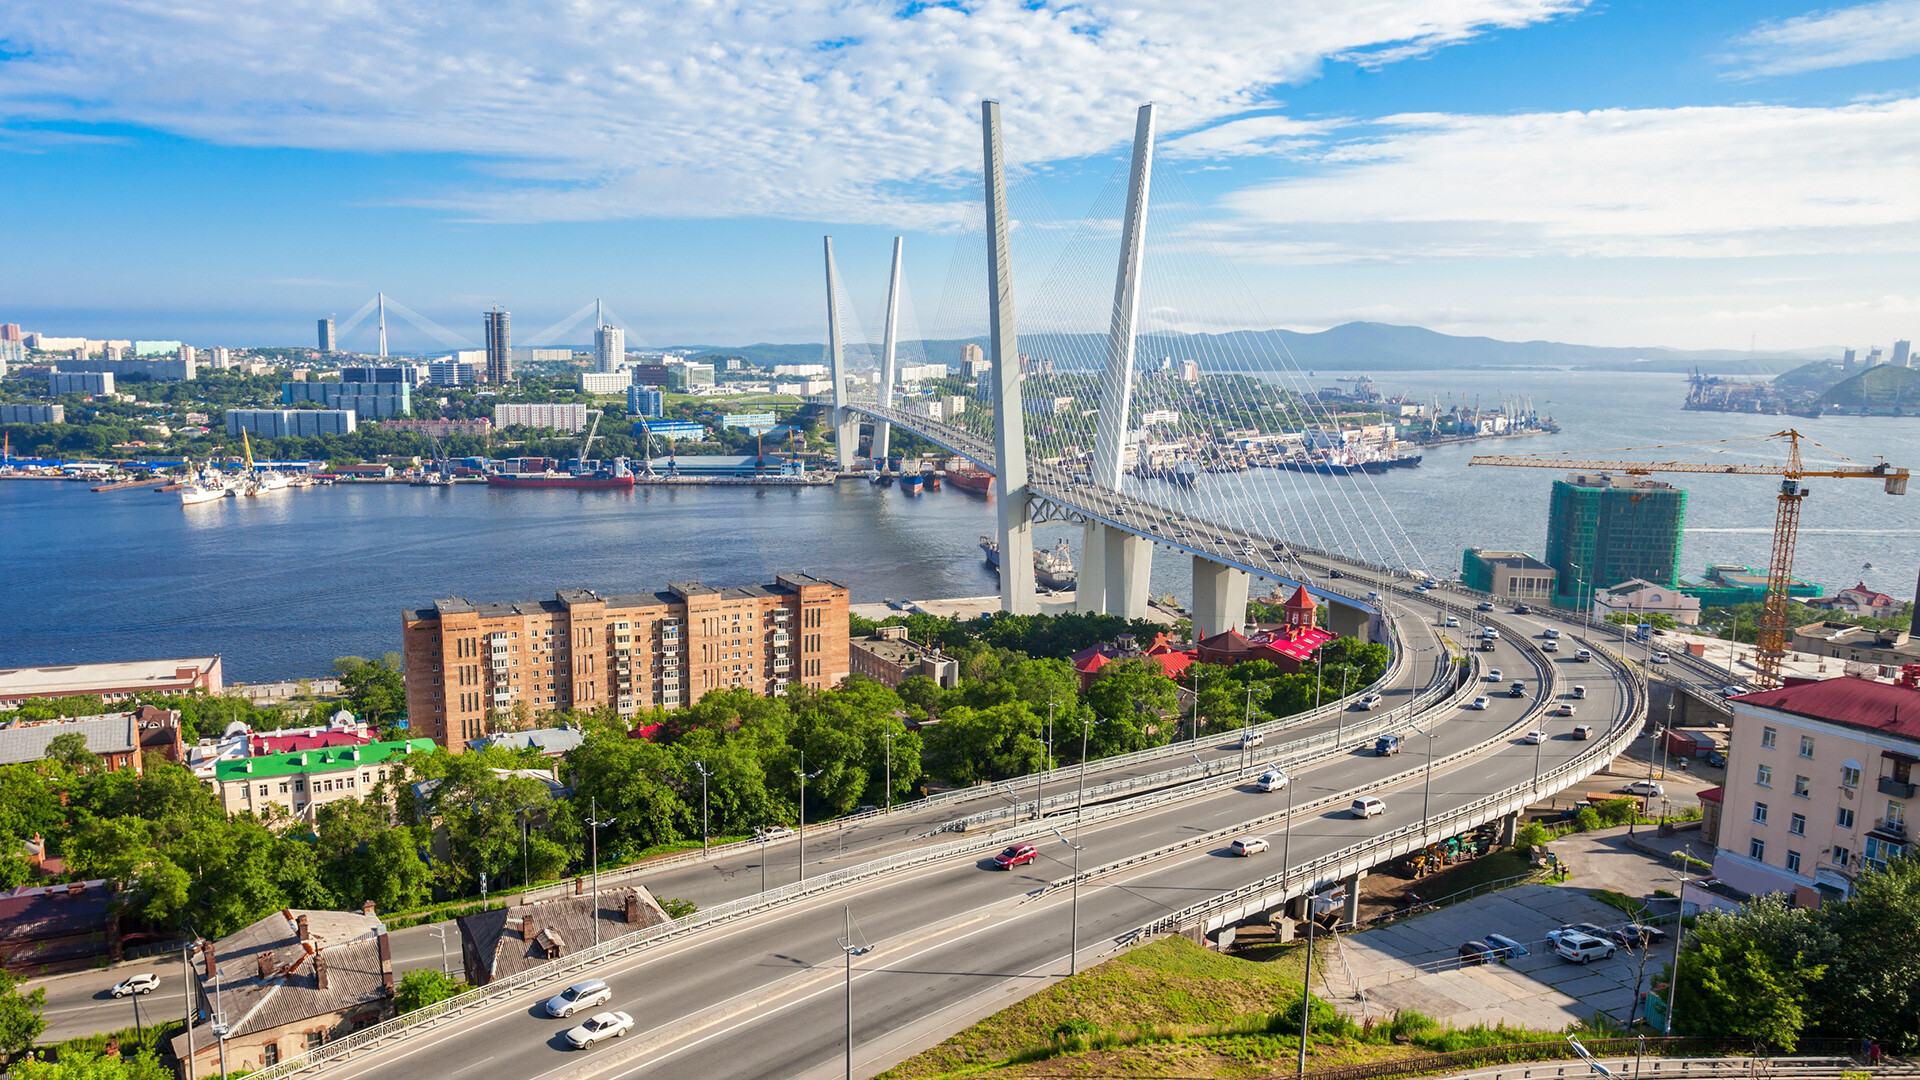 The iconic view of Vladivostok.